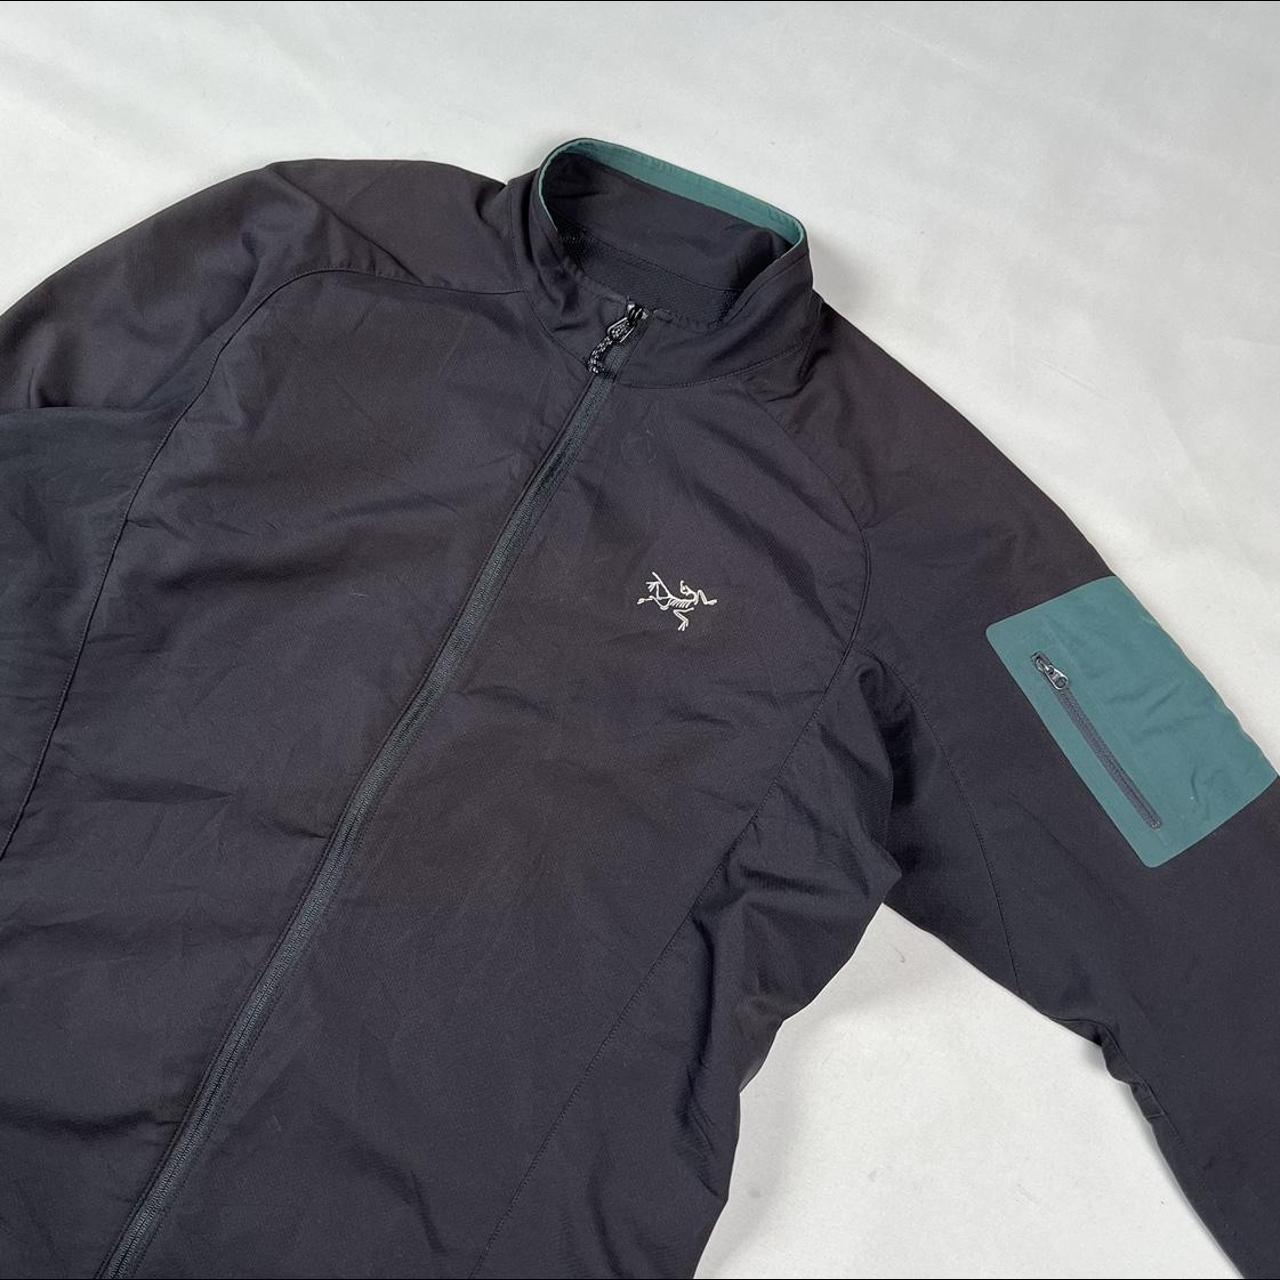 D-39 Vintage Arcteryx jacket Condition: • Good... - Depop